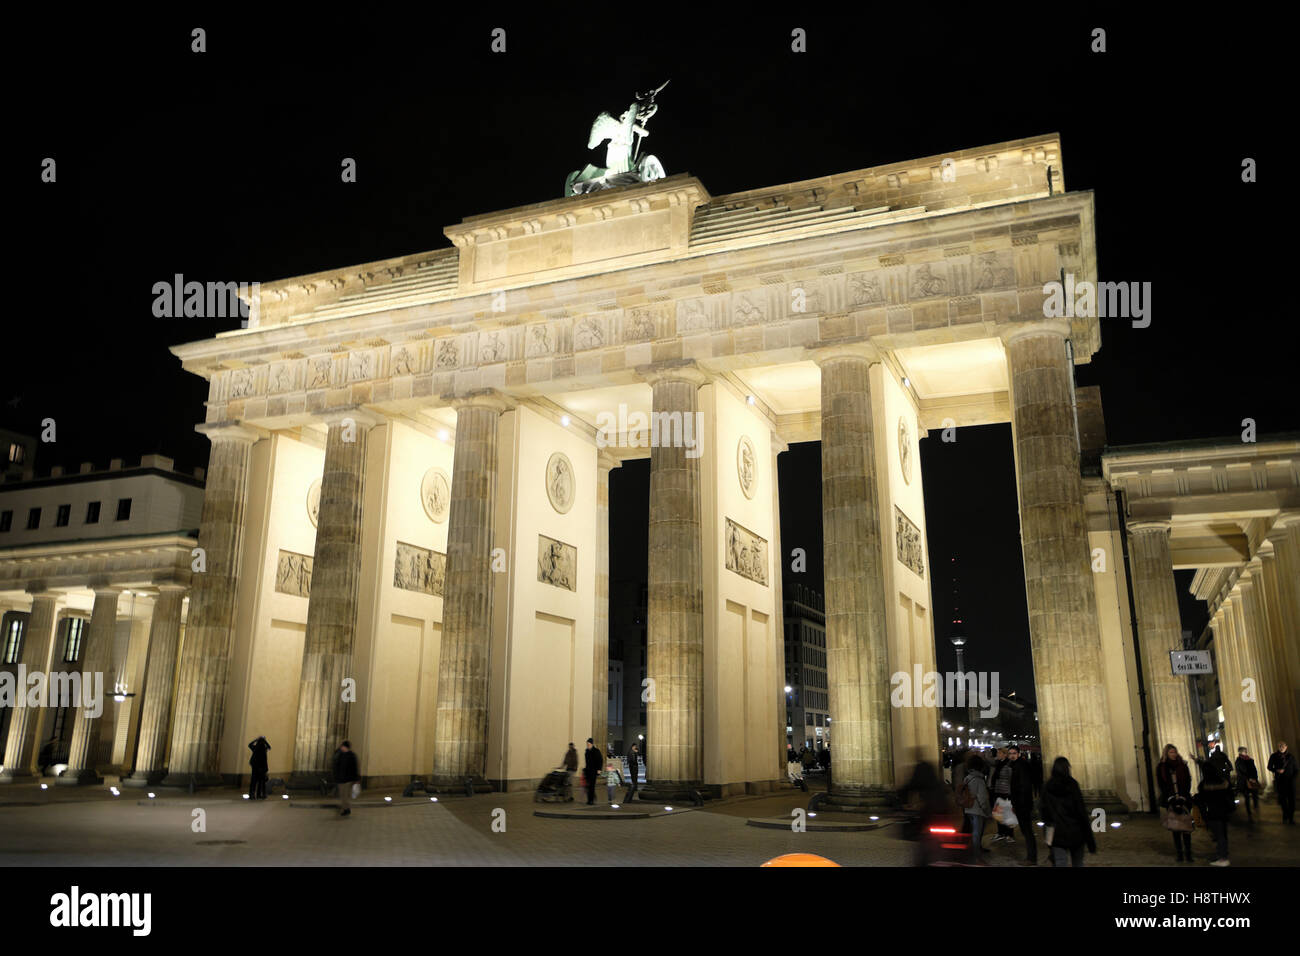 Brandenburger Tor bei Nacht beleuchtet mit Menschen im Herbst Pariser Platz Berlin Deutschland Europa EU KATHY DEWITT Stockfoto